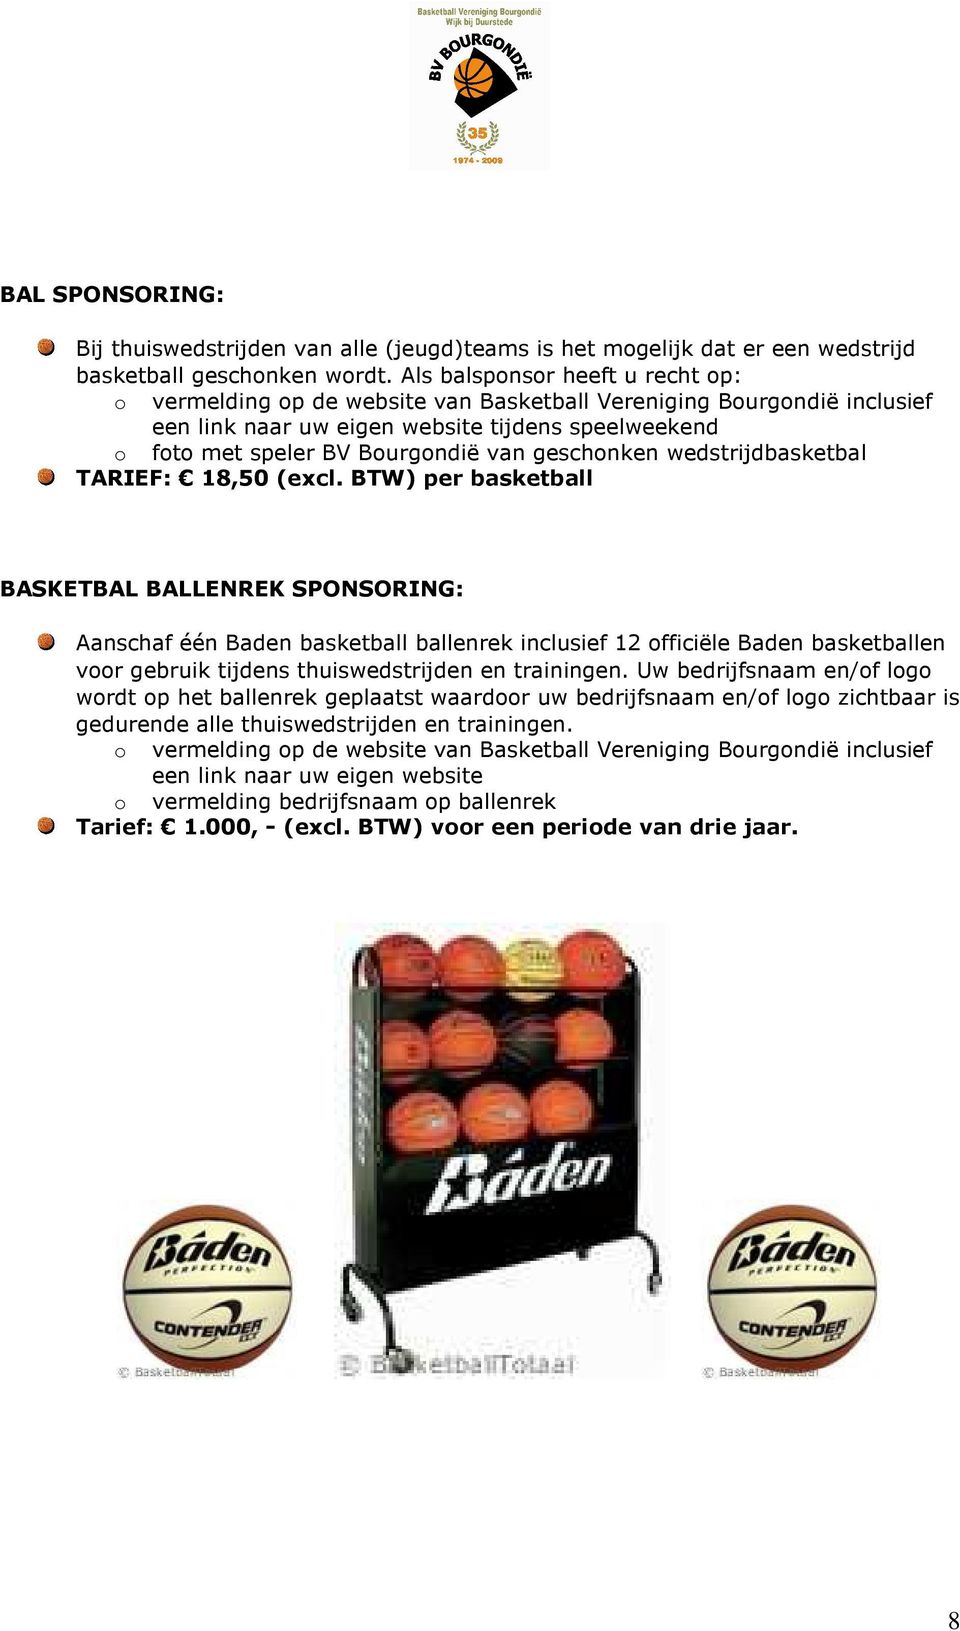 BTW) per basketball BASKETBAL BALLENREK SPONSORING: Aanschaf één Baden basketball ballenrek inclusief 12 officiële Baden basketballen voor gebruik tijdens thuiswedstrijden en